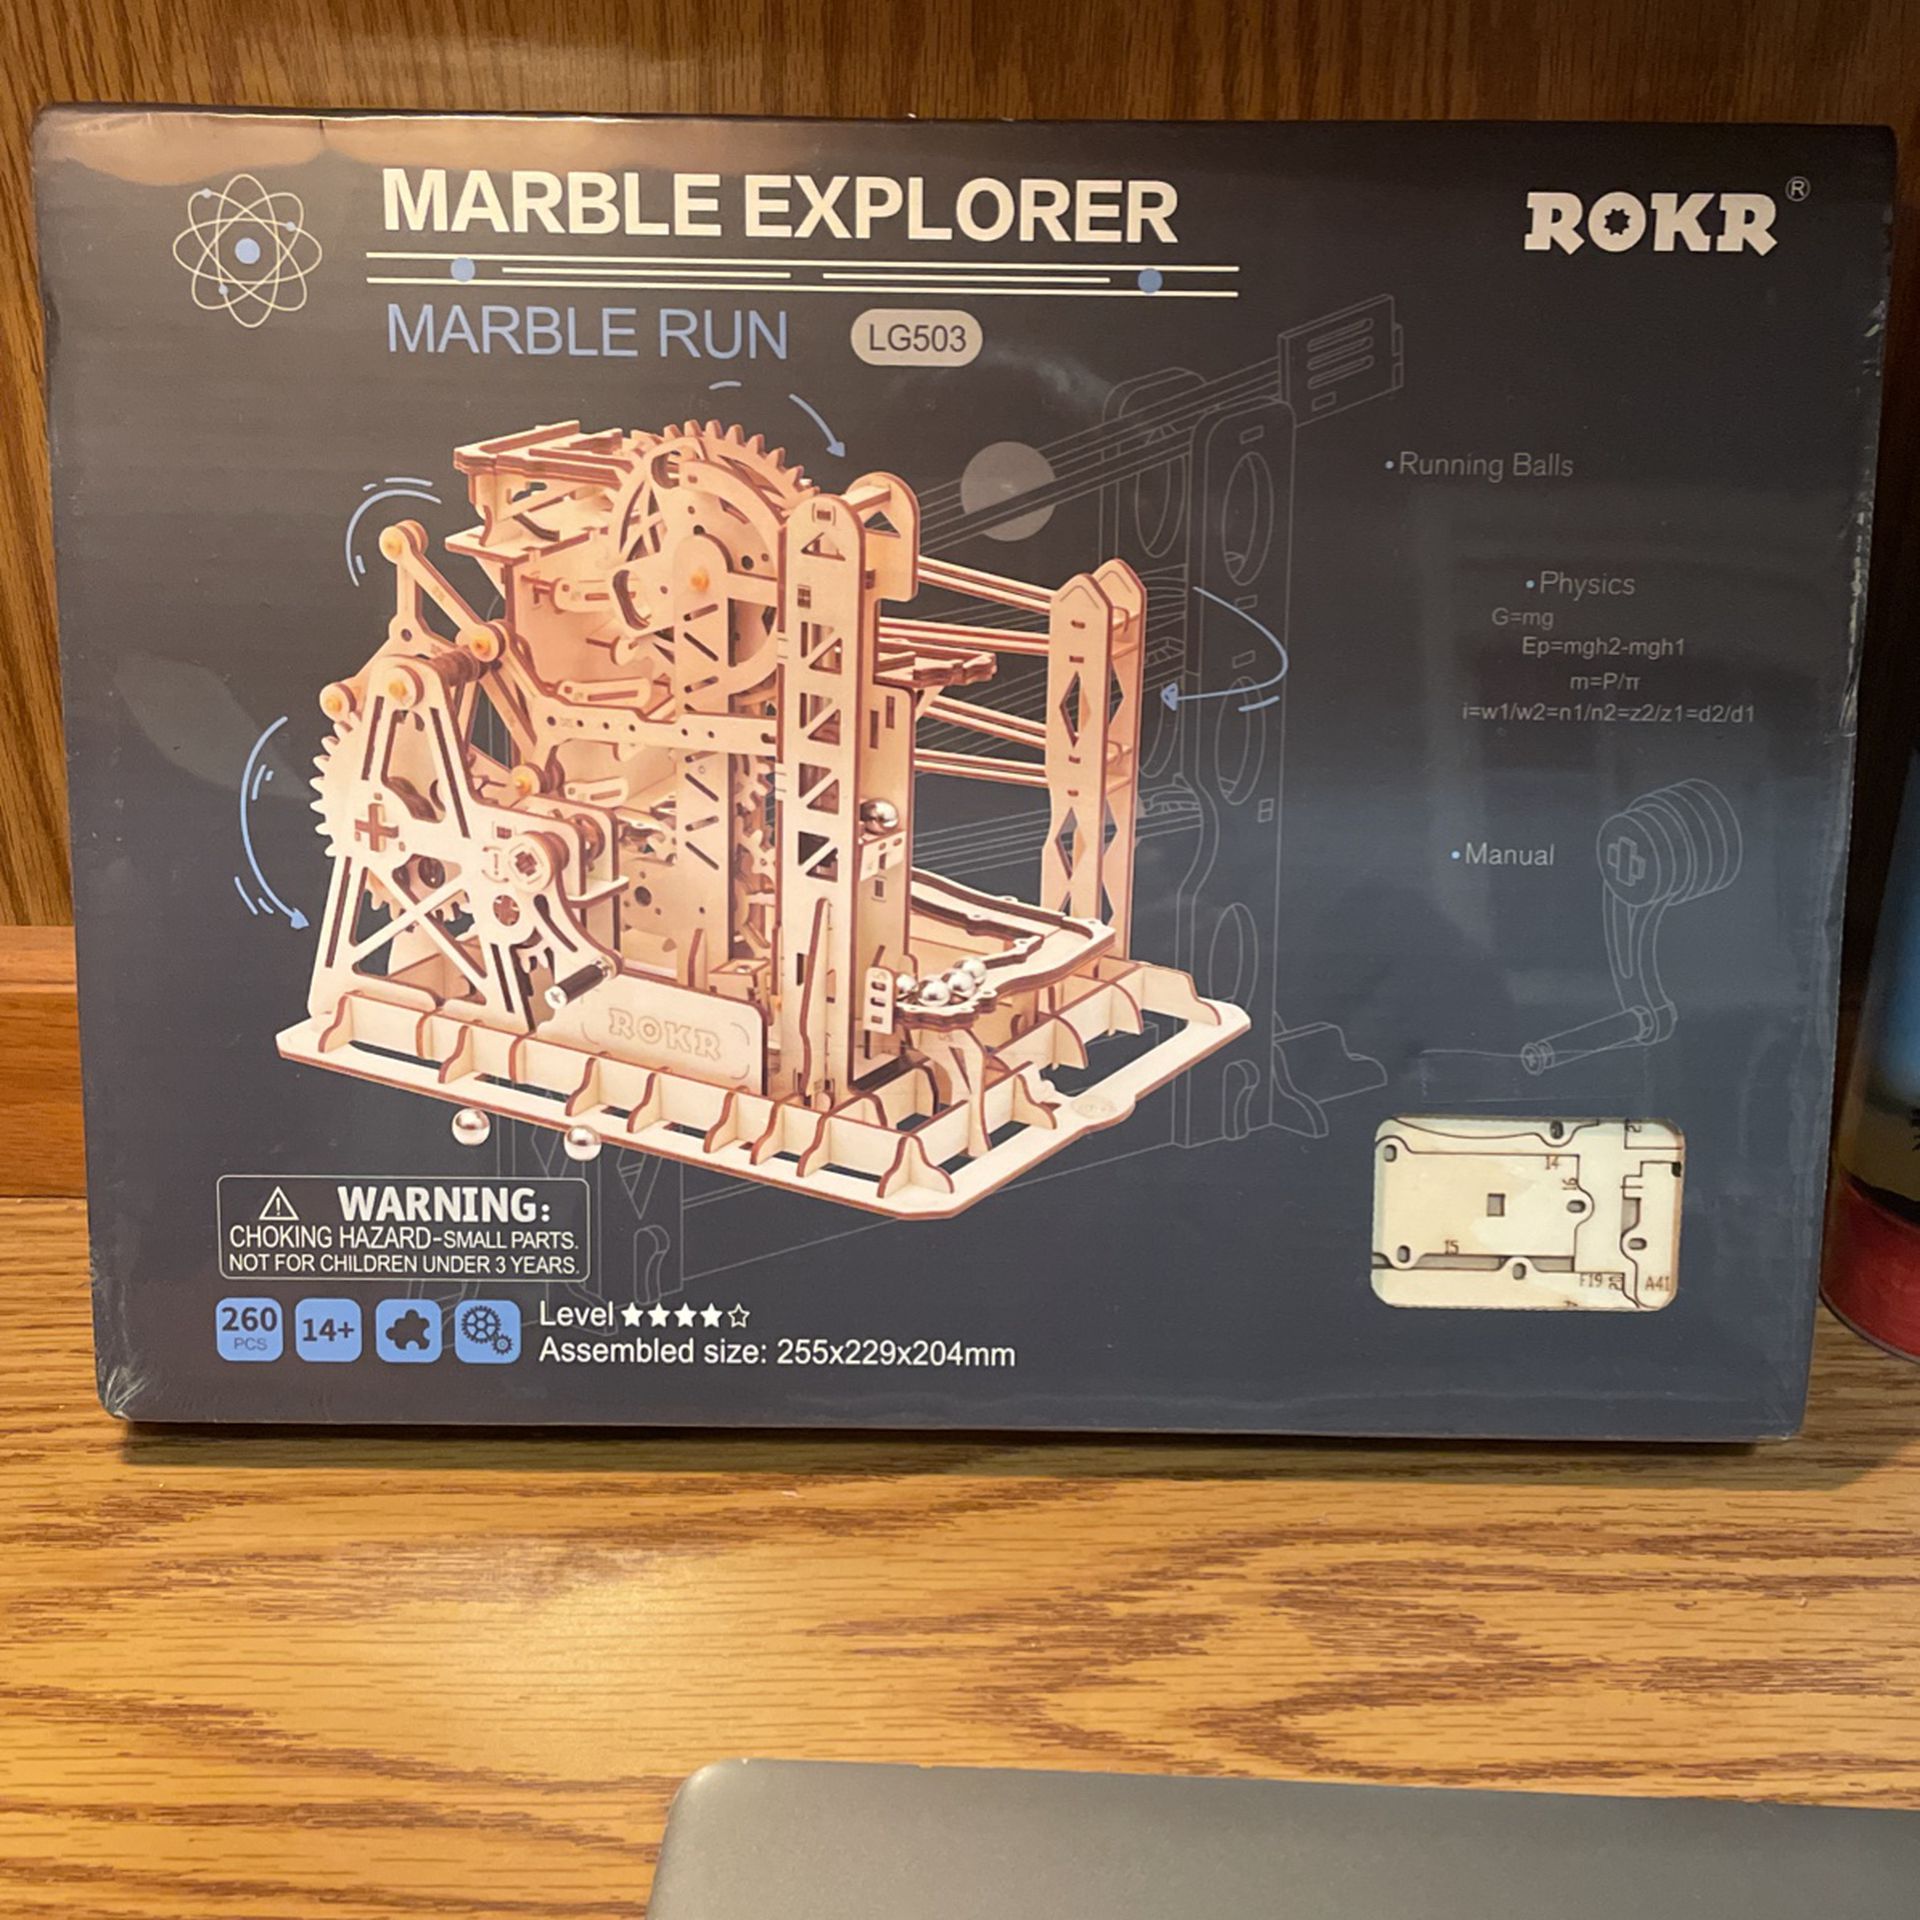 ROKR Marble Explorer Marble Run LG503 Laser Cut 3D Wooden Puzzle 260 Pieces NIB